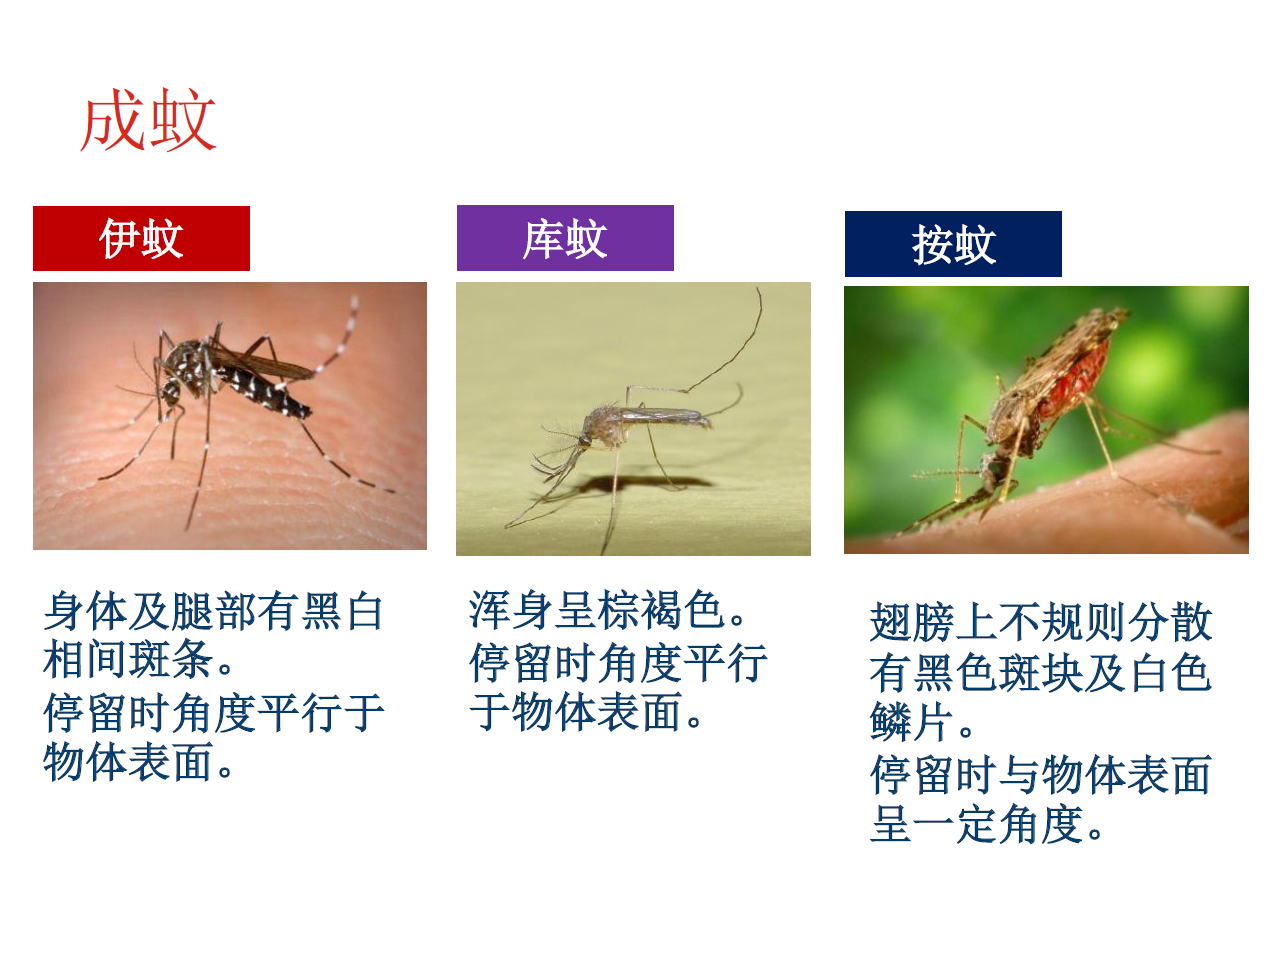 虫害防制人员教您认识蚊子的习性与分类